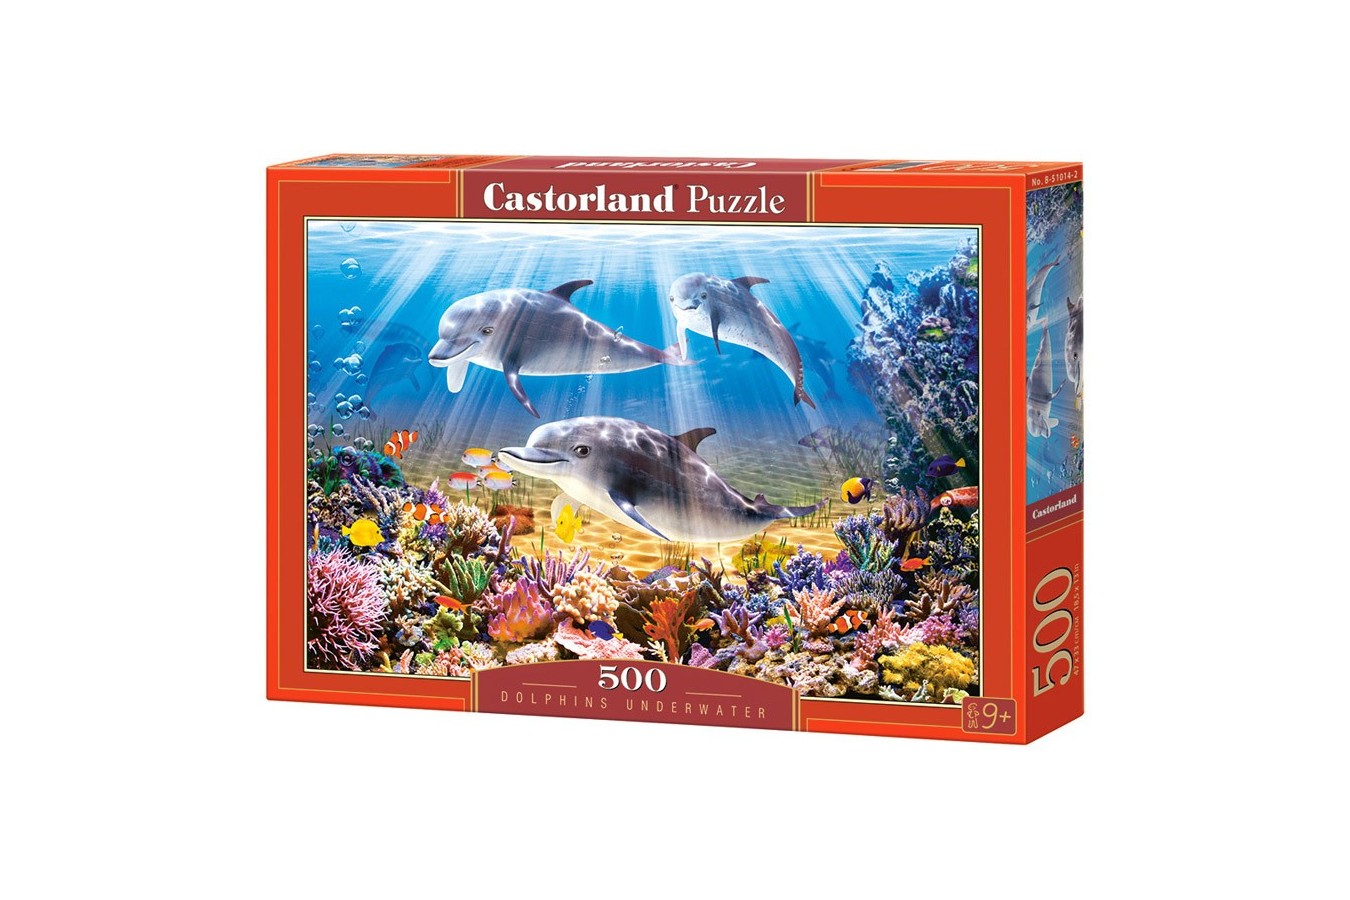 Puzzle Castorland - Doplhins Underwater, 500 piese